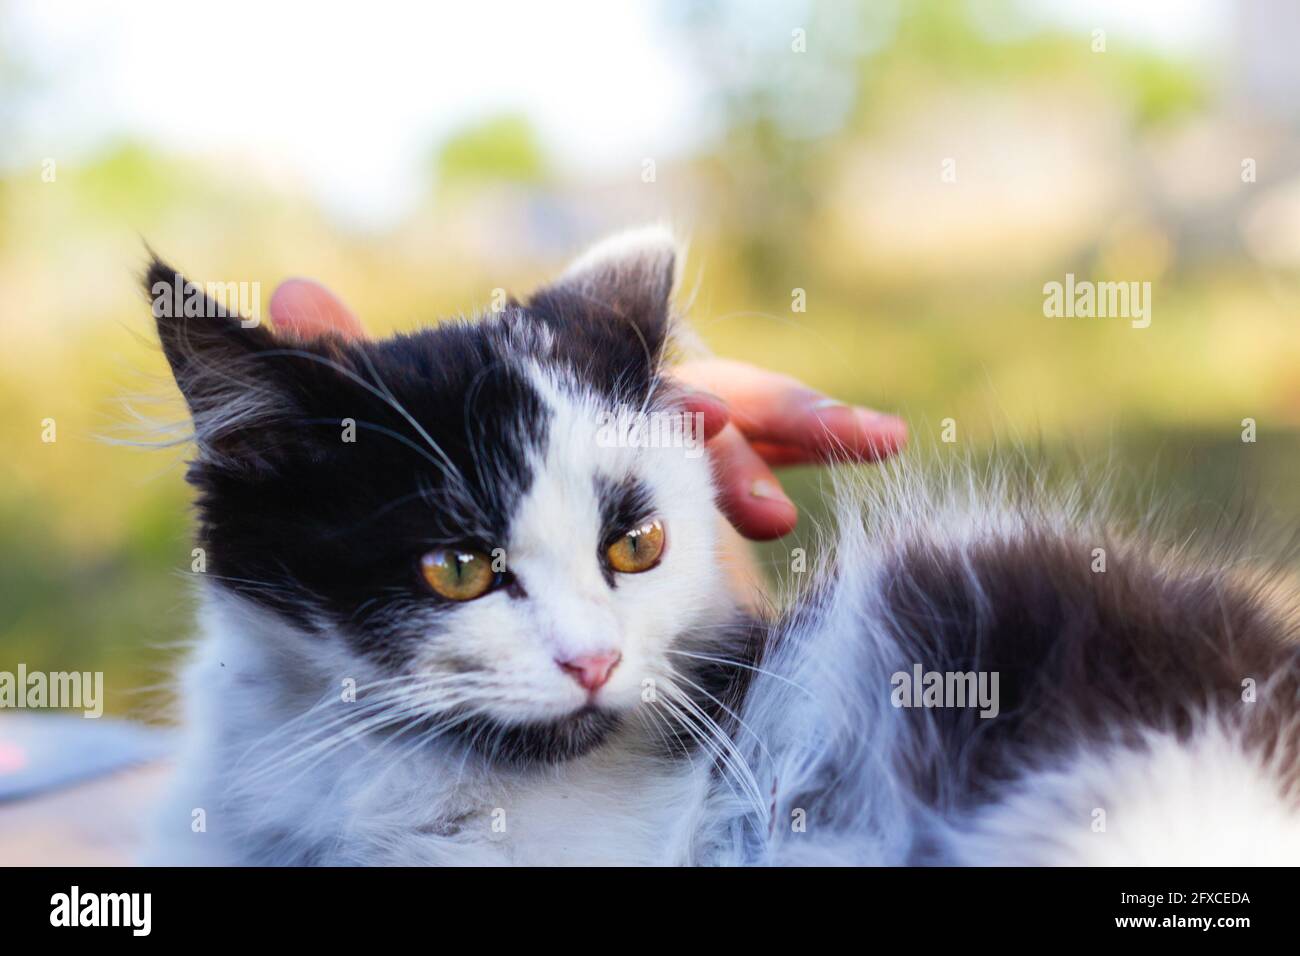 Defocalizzare le mani femminili stroking e carezzare carino adorabile gatto bianco e nero, gattino con bei occhi gialli. PET Love background. Mammifero peloso Foto Stock